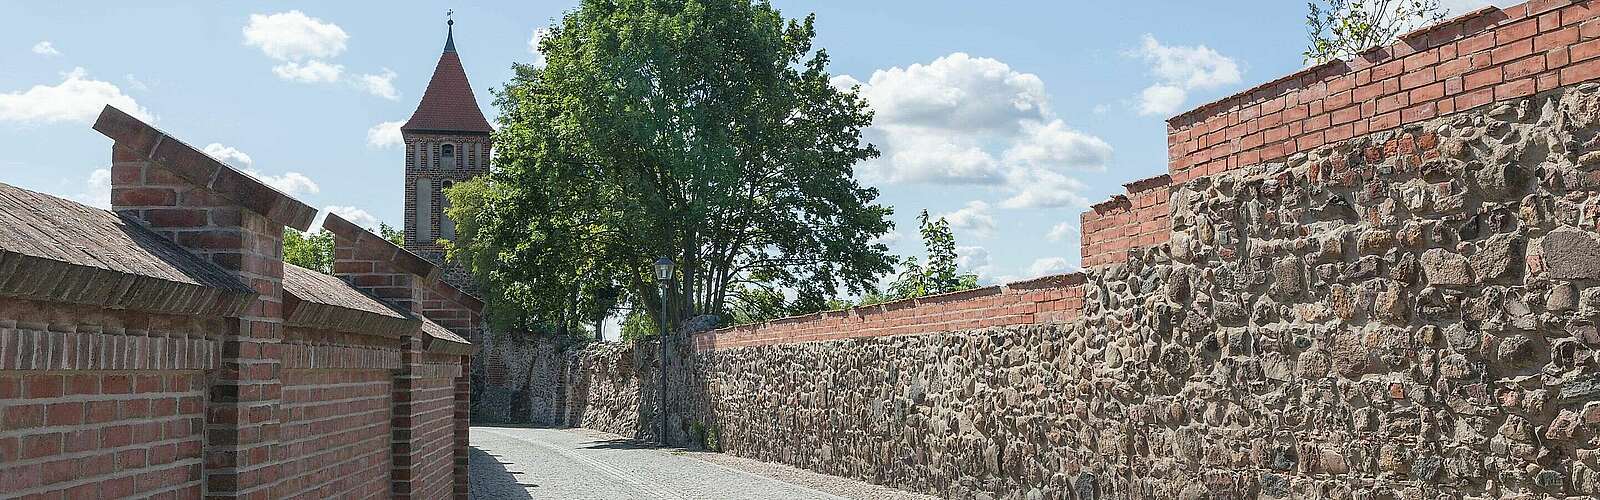 Die alte Stadtmauer von Jüterbog,
        
    

        Foto: Fotograf / Lizenz - Media Import/Anja Bruckbauer